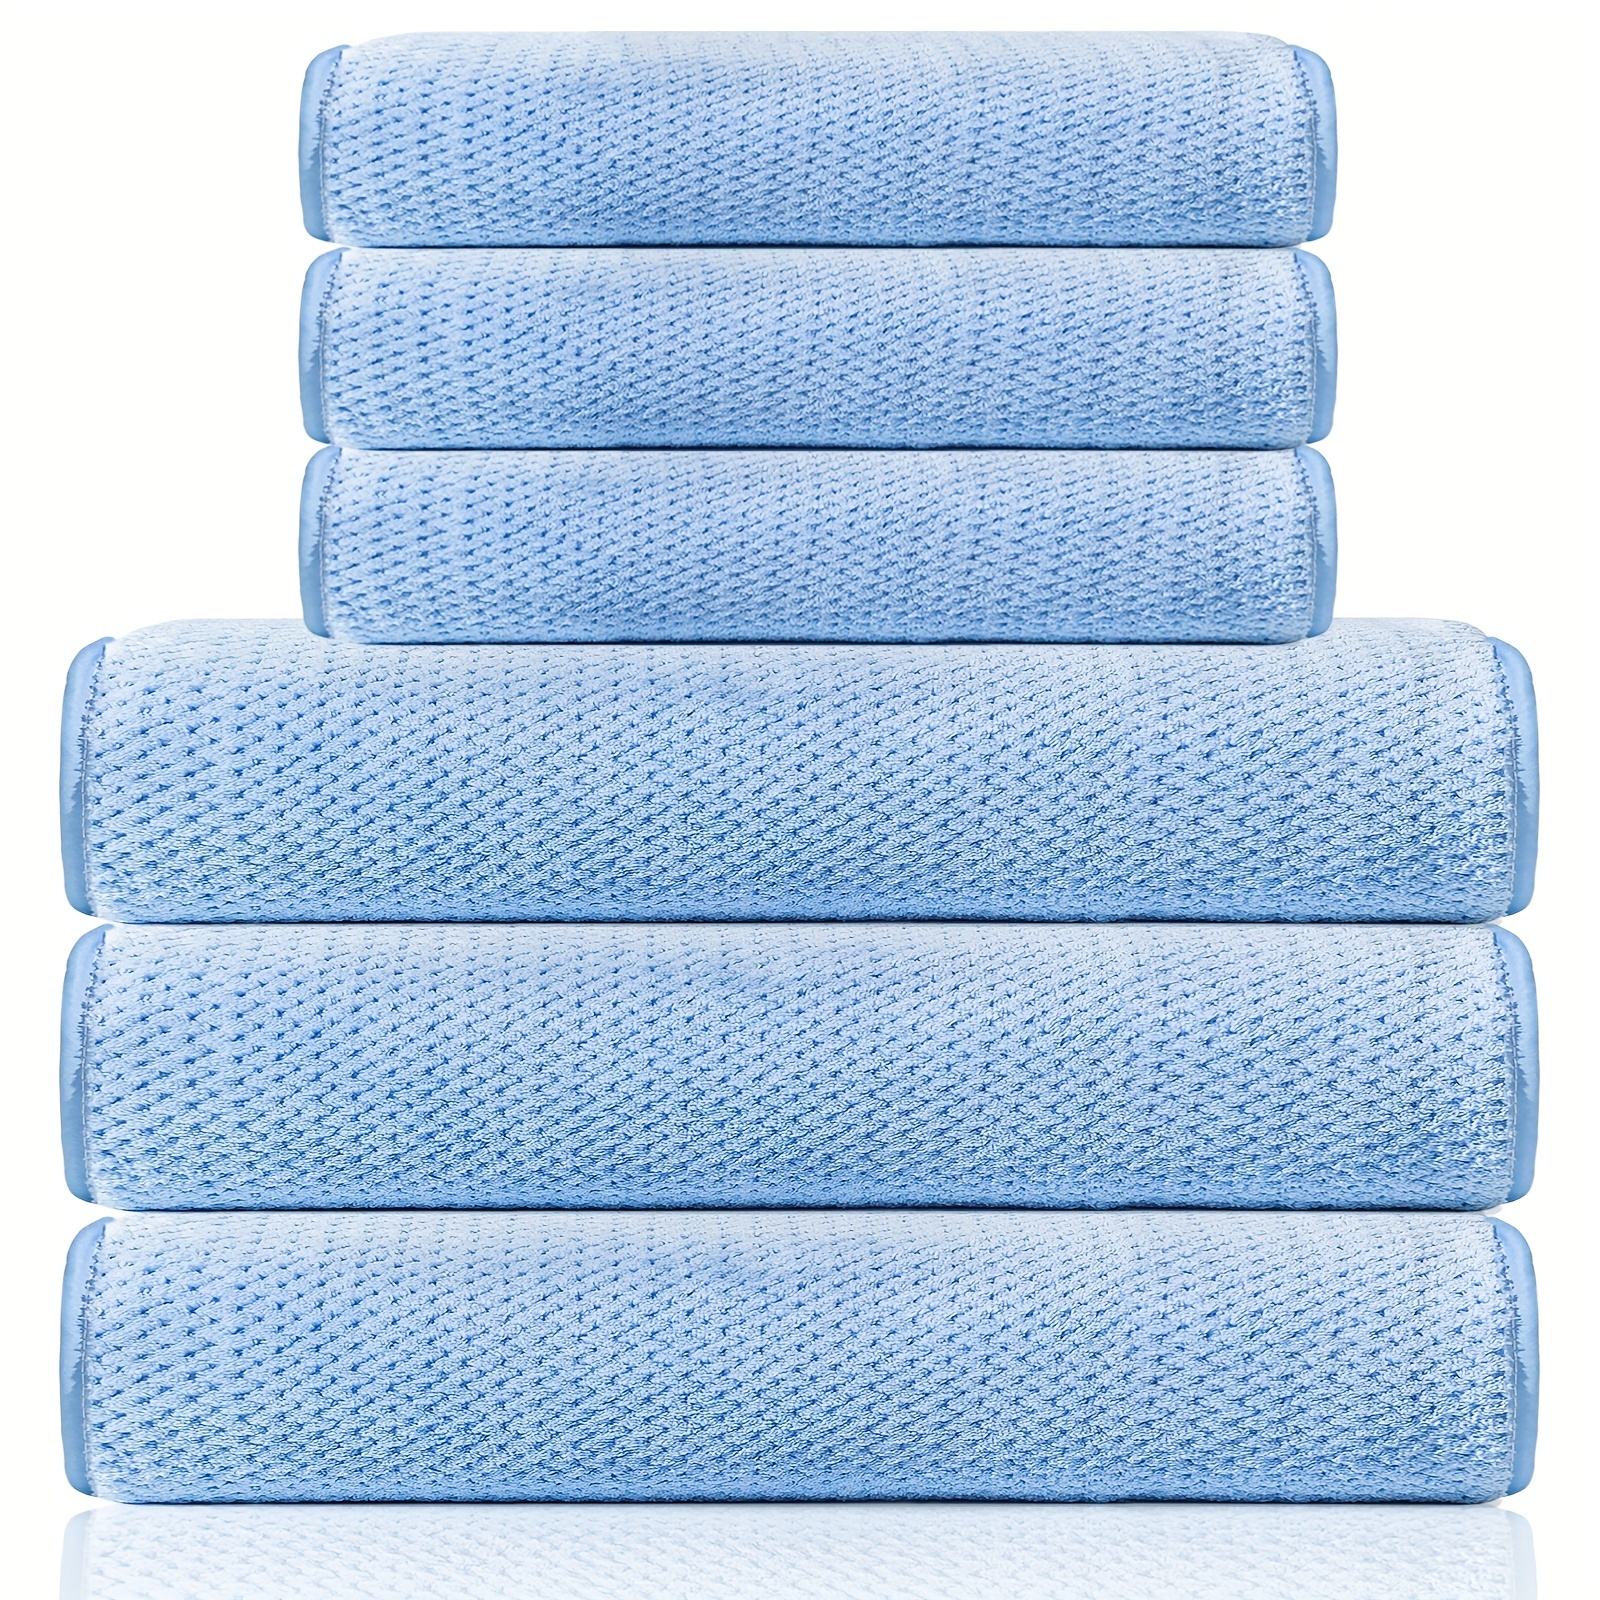 6pcs Super Soft Ultra Thin Fiber Bath Towel Set Including 2 Bath